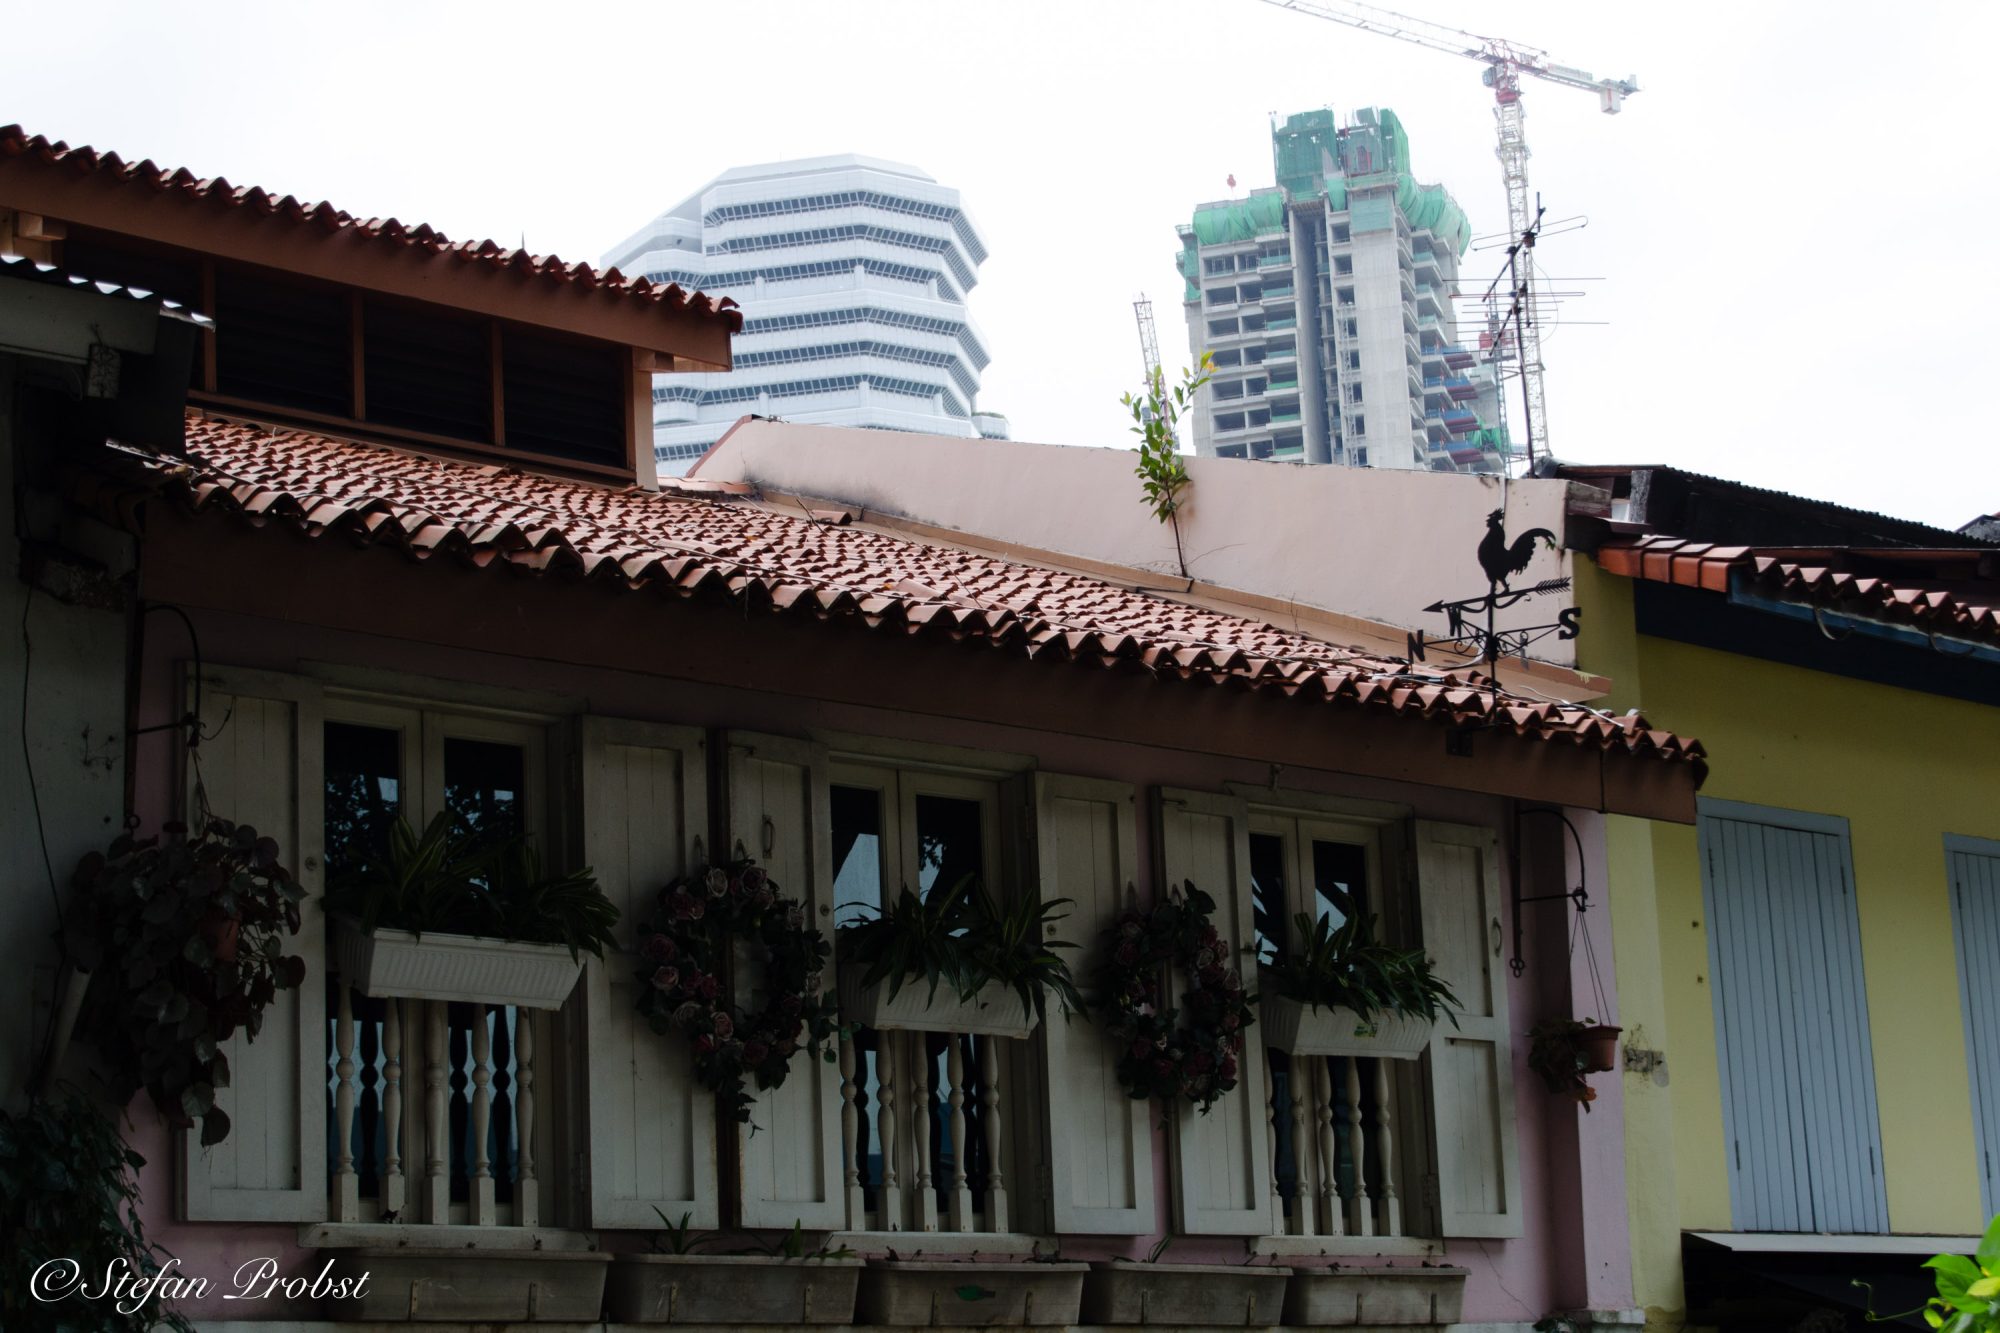 Alte typische Häuser in Singapur vor dem Neubau eines Hochhauses